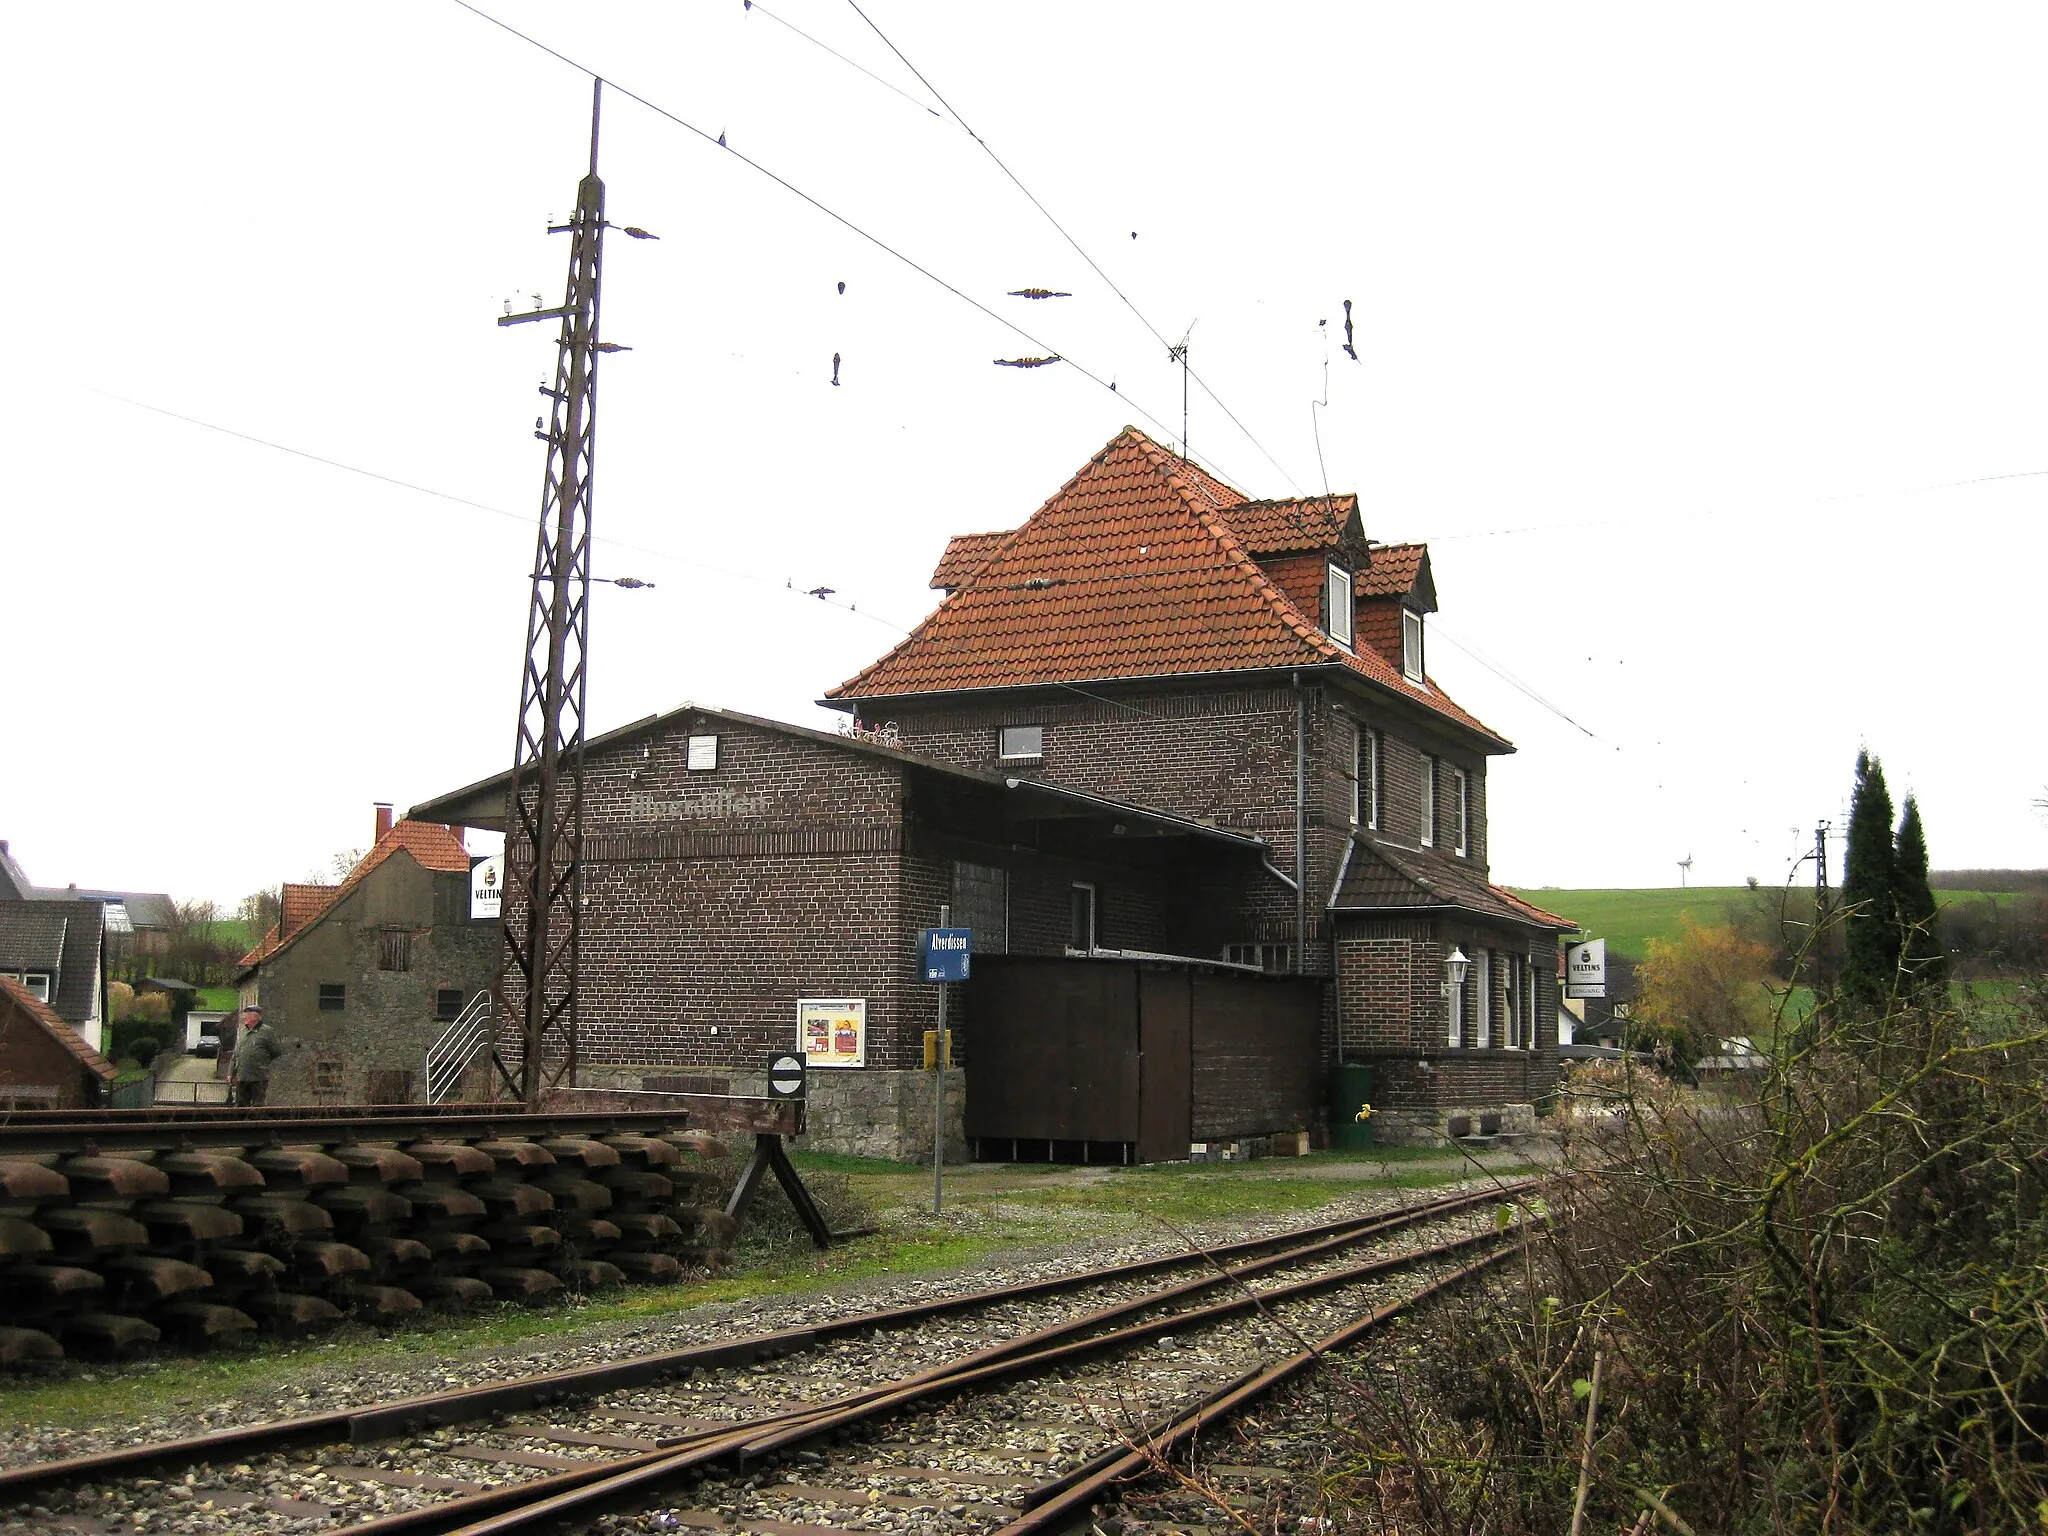 Photo showing: train station in Barntrup-Alverdissen